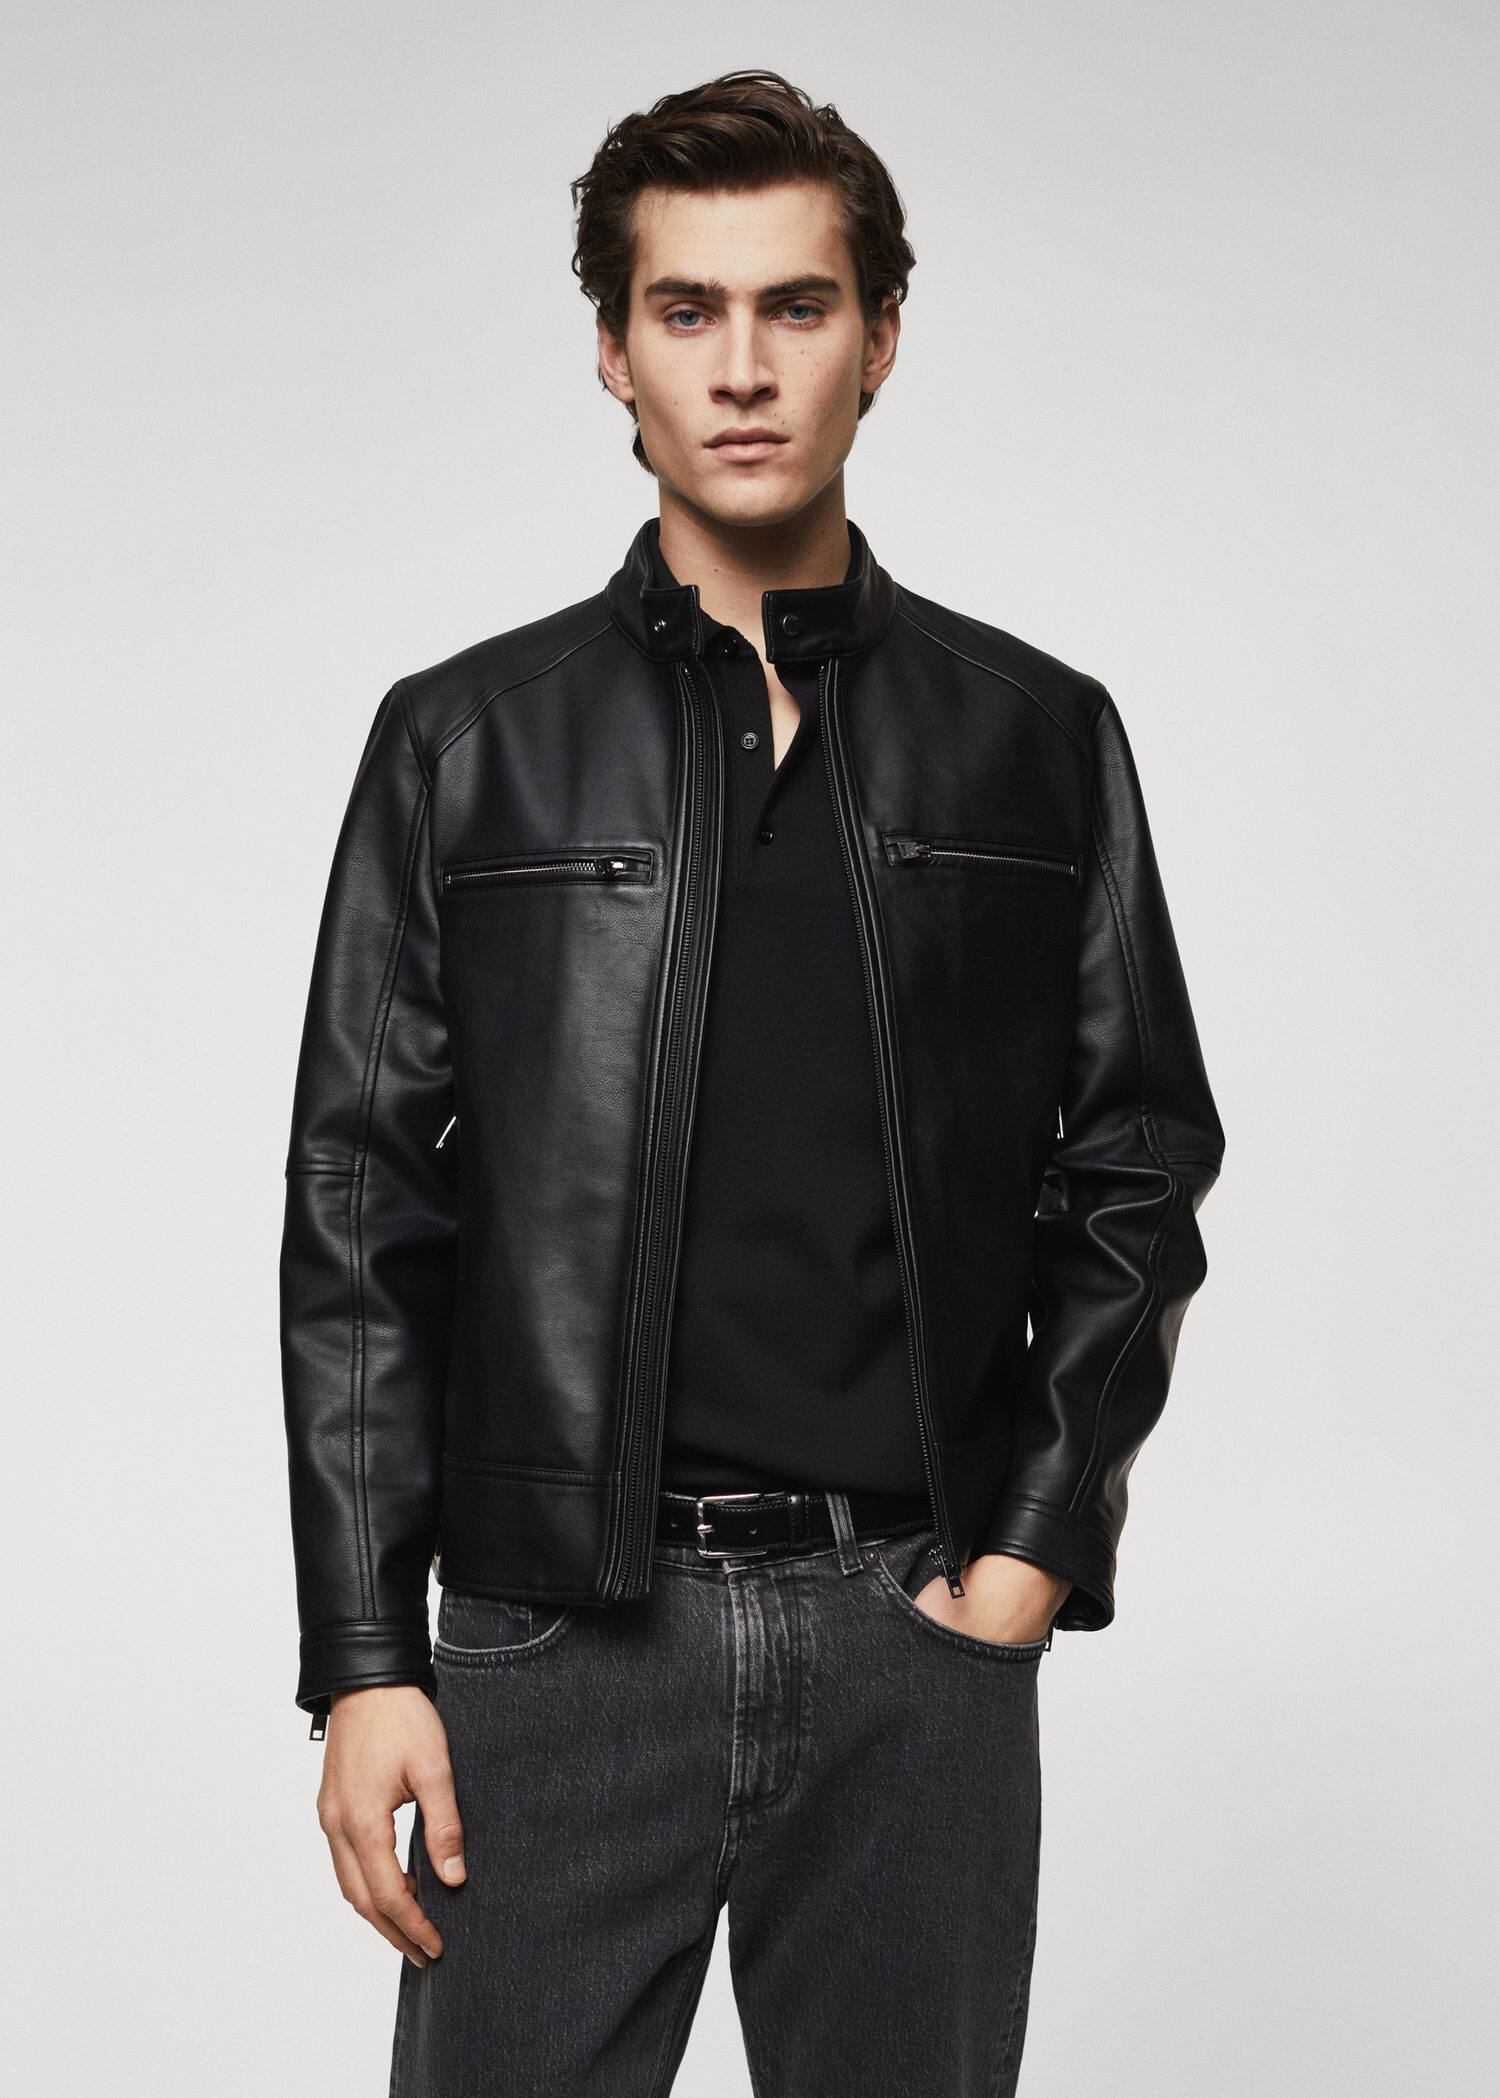 Faux leather jacket - Medium plane